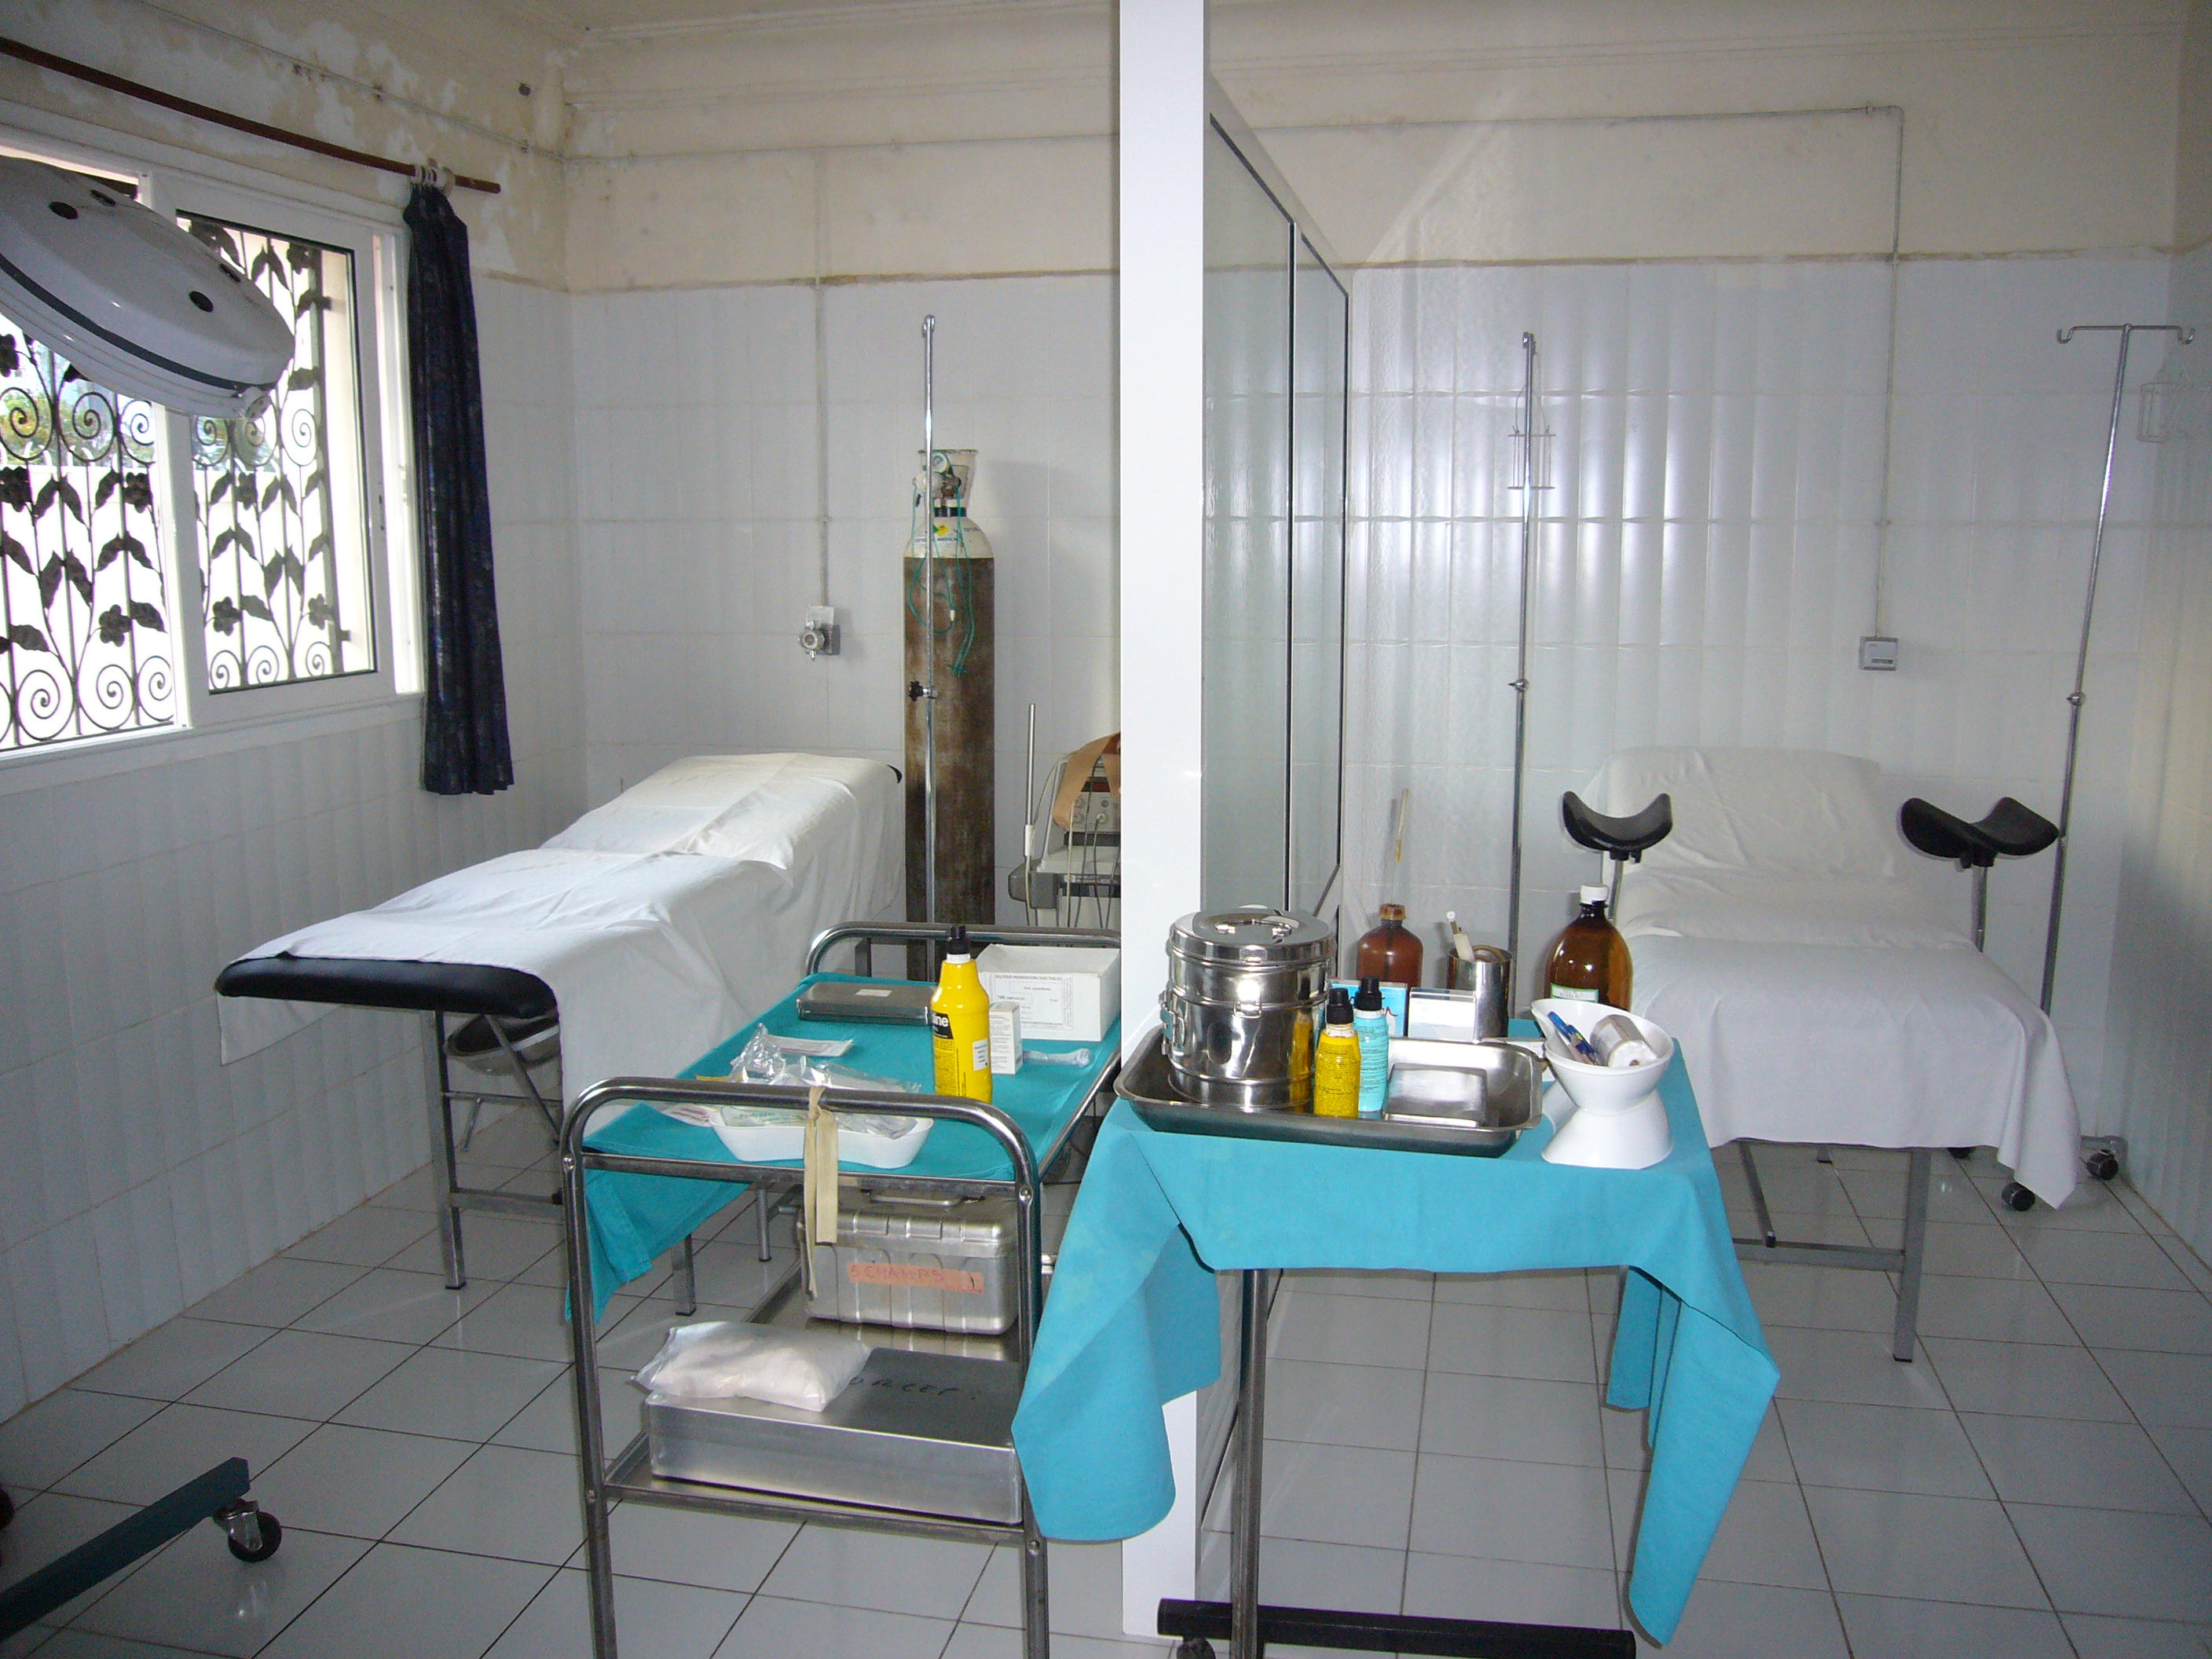 Afrique: Propagation de la fièvre rouge - Quand Ebola met à nu les tares des systèmes sanitaires africains